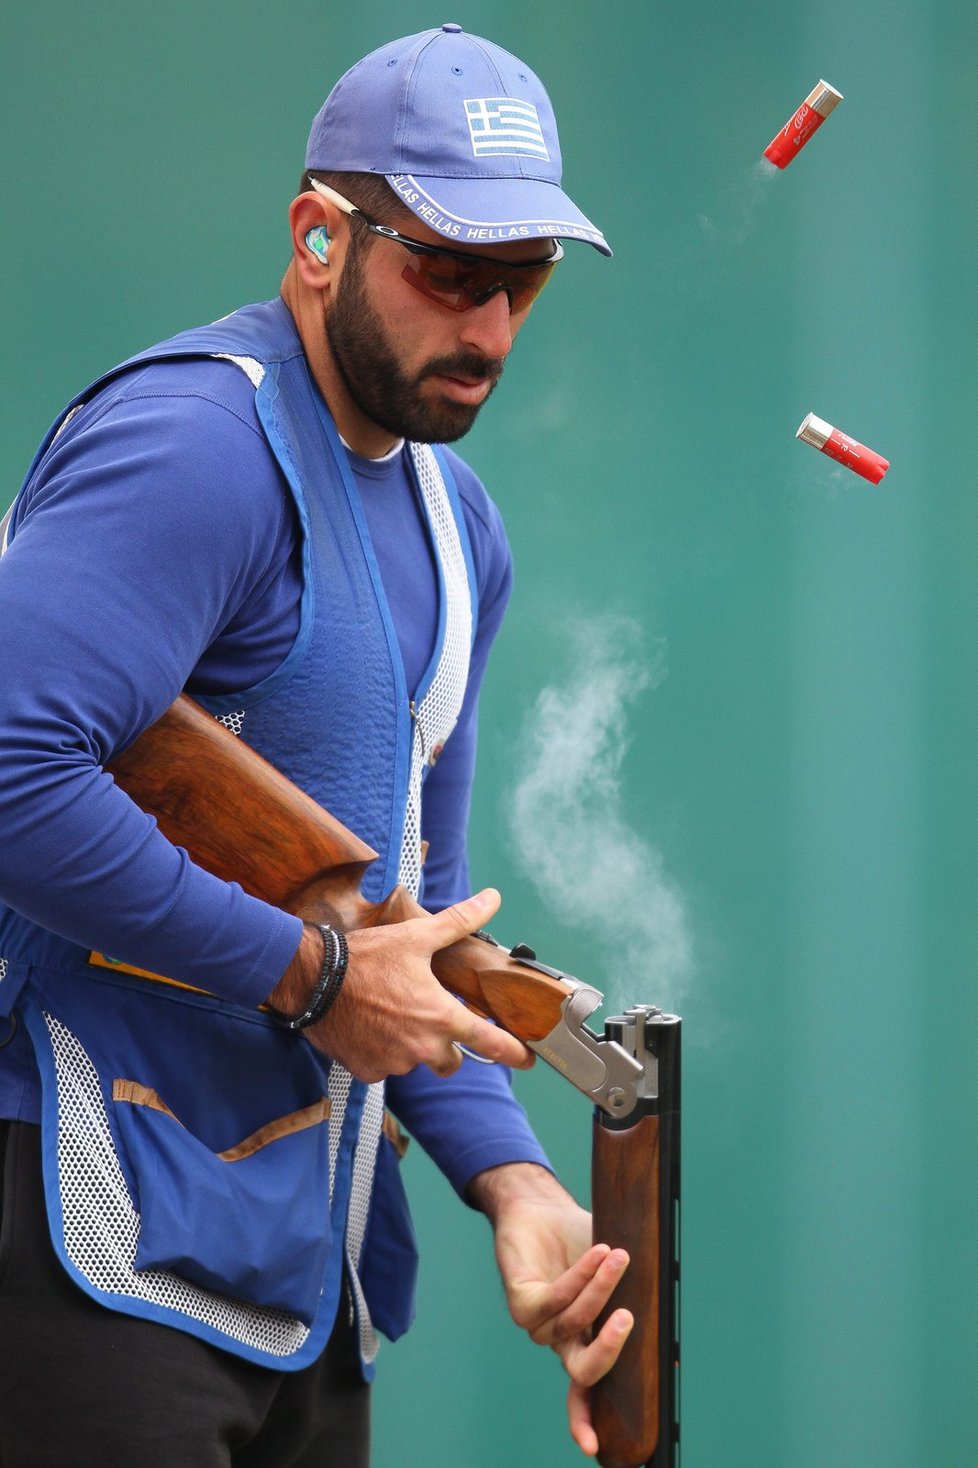 Kyperský střelec a momentka z jednoho z posledních testování výkonnosti před olympiádou v Londýně